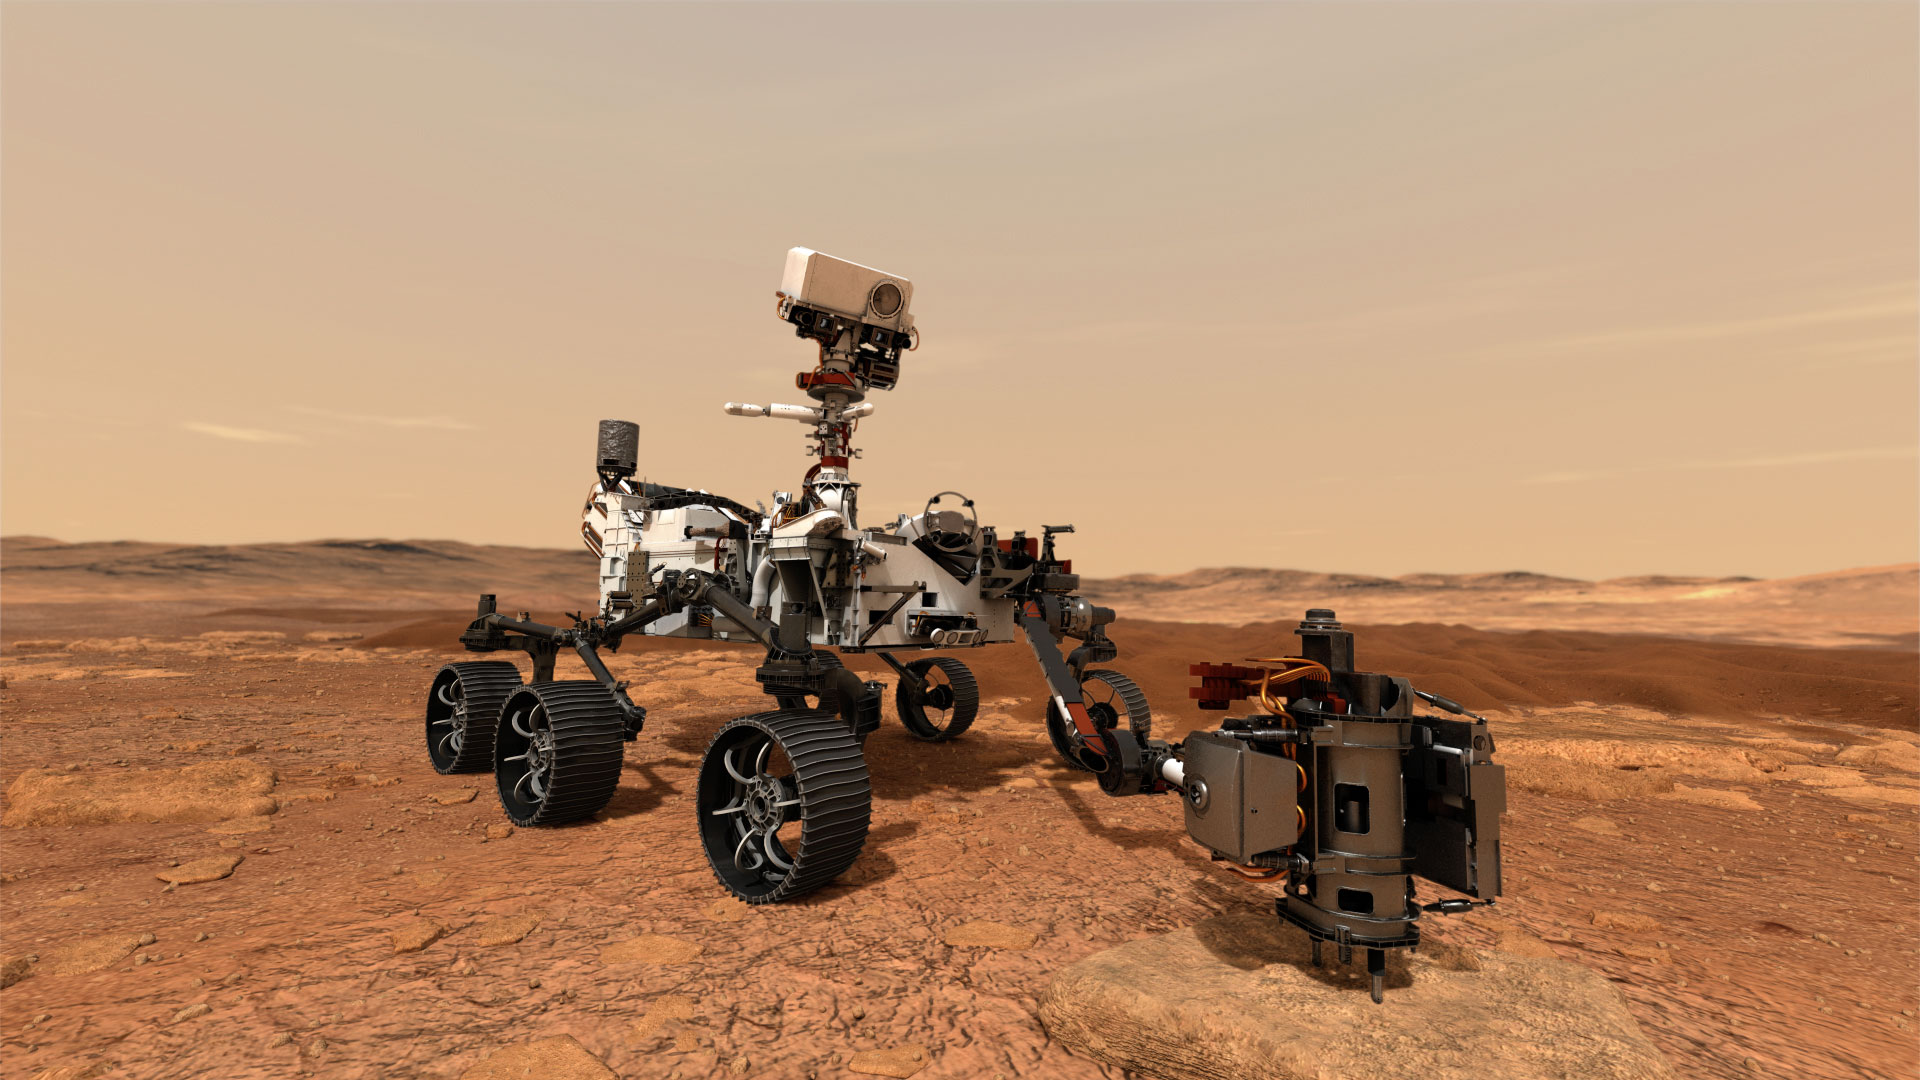 Con el lanzamiento de "Preseverance", la NASA da el primer paso para la exploración de Marte con humanos, uno de los grandes objetivos de la agencia espacial, que también busca crear asentamientos permanentes tanto en la Luna como en el planeta rojo. (NASA/JPL-Caltech)